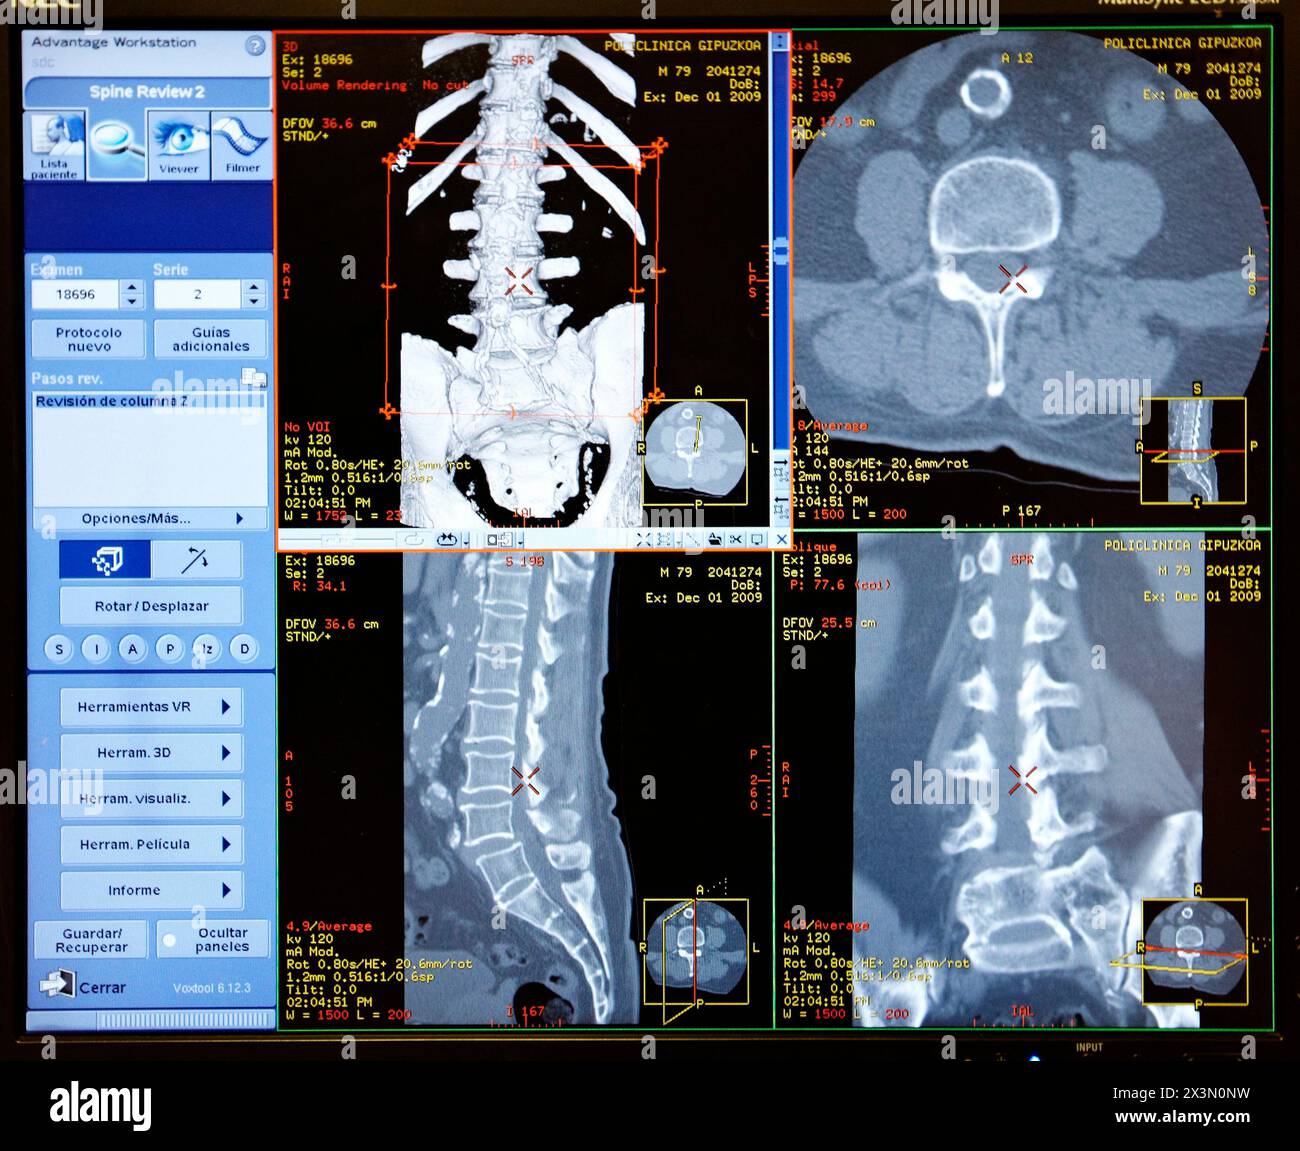 Acquisition HD (haute définition) de la colonne vertébrale, CAT, imagerie médicale pour le diagnostic. Hôpital Policlinica Gipuzkoa, Saint-Sébastien, Donostia, Euskadi, Espagne Banque D'Images